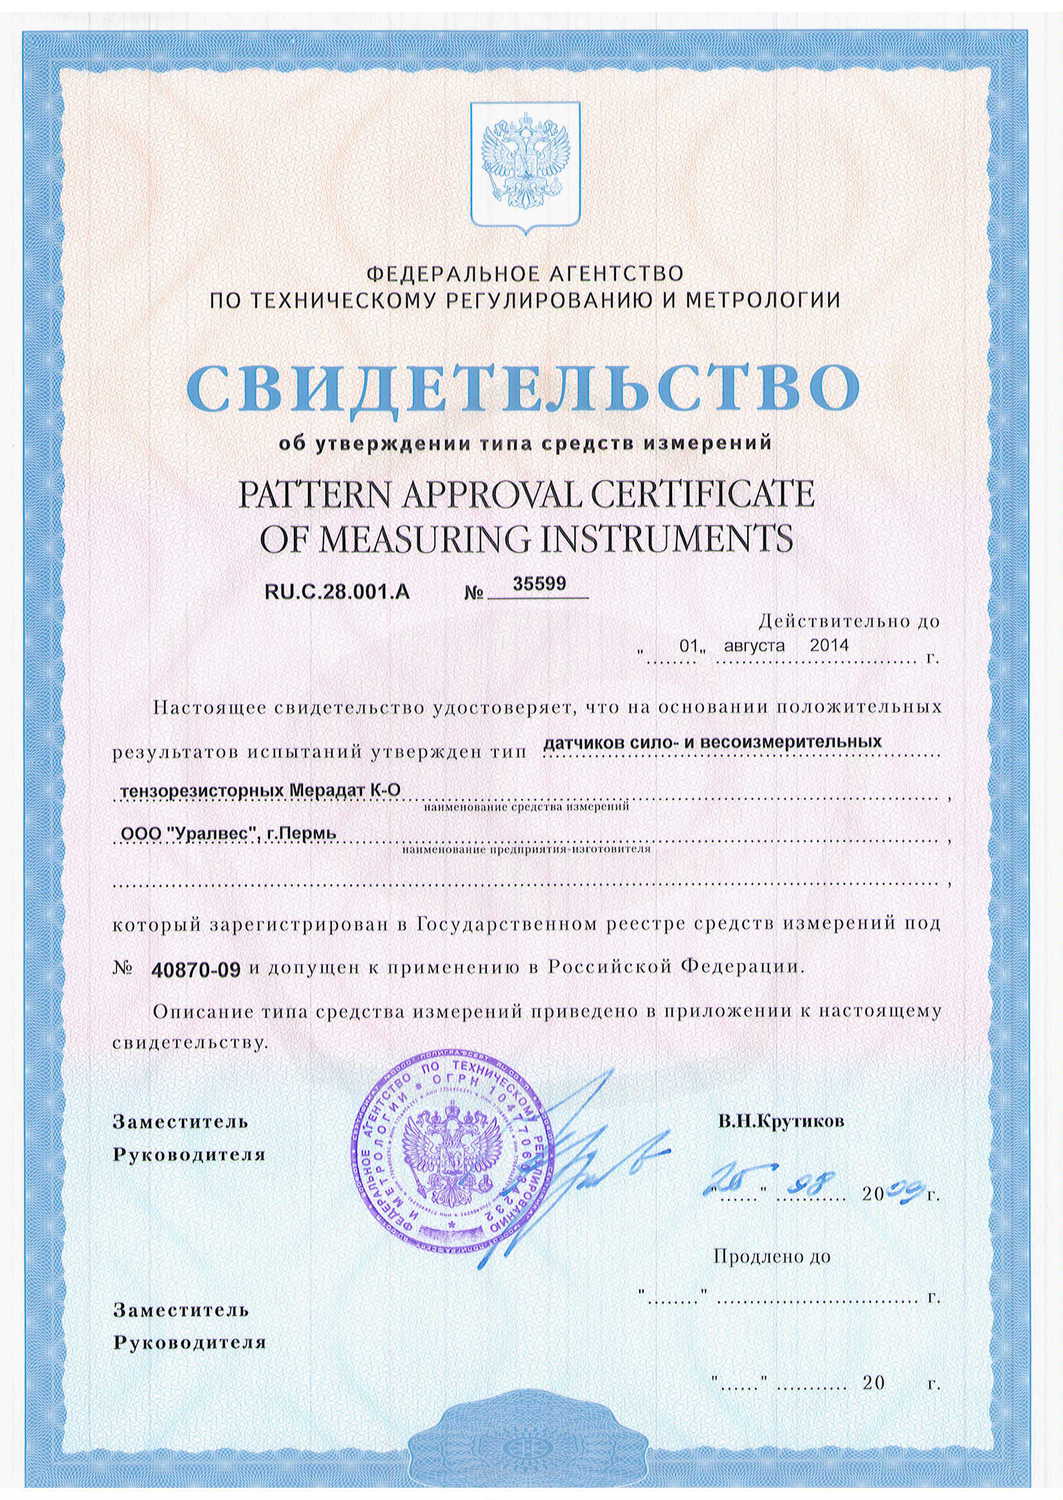 Вектор Волга сертификат